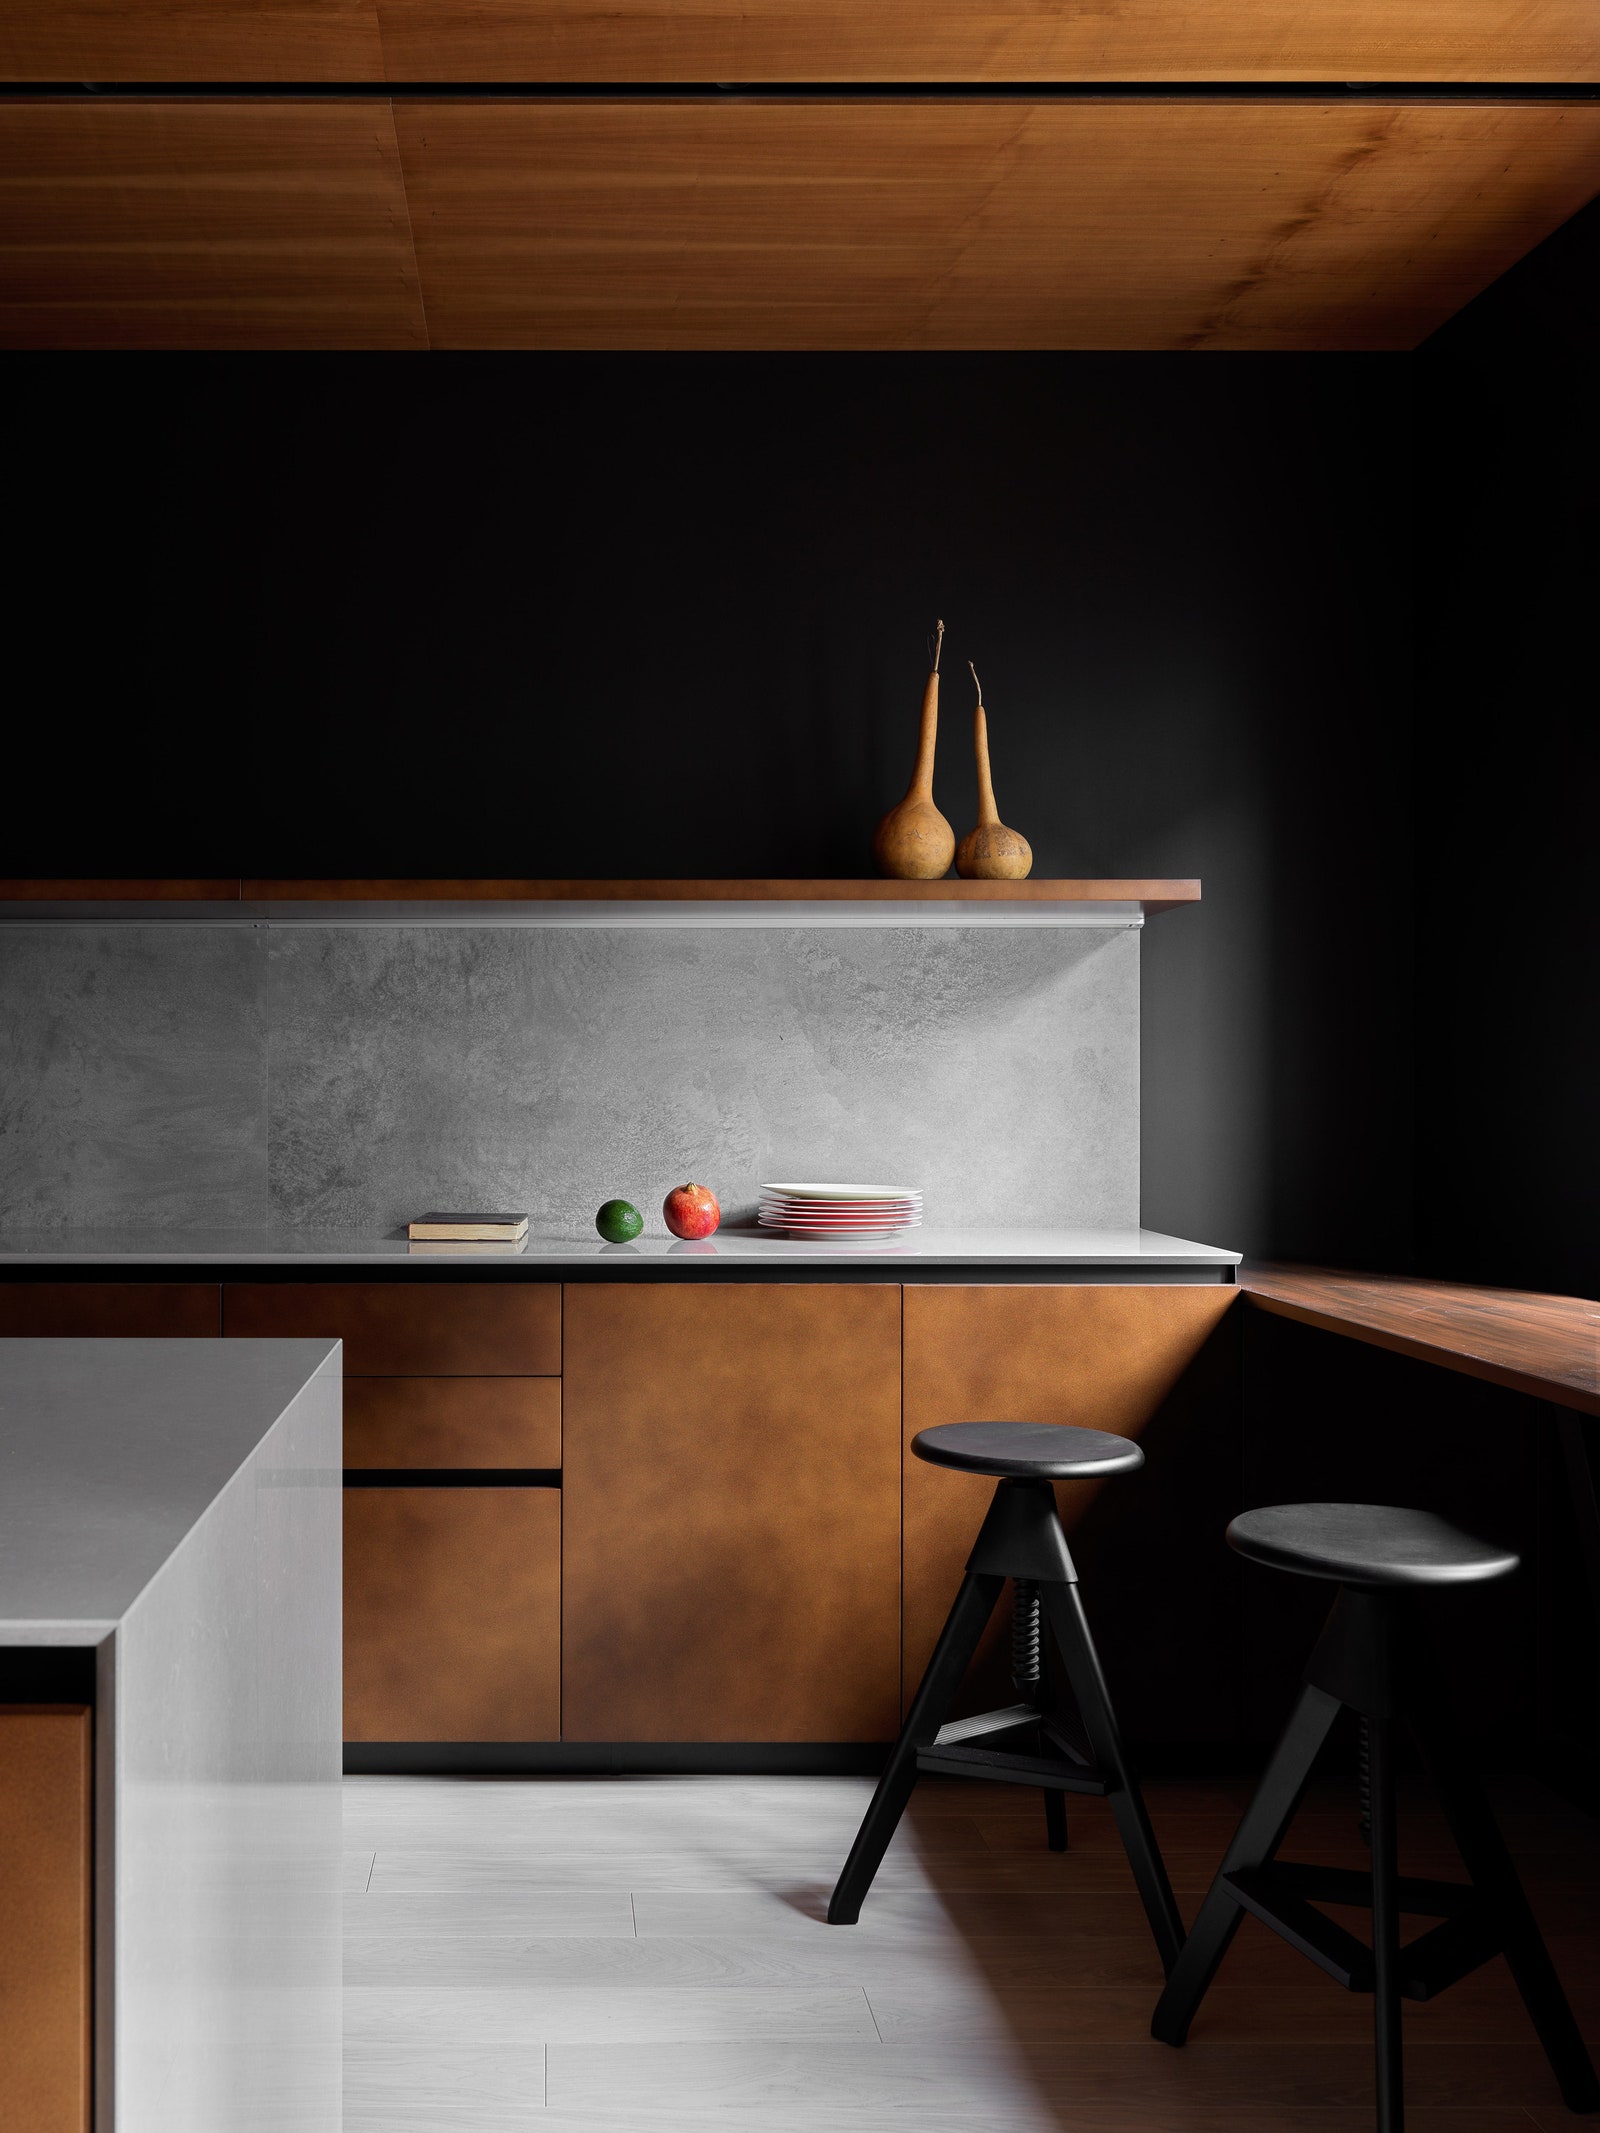 Итальянский кухон­ный гарнитур дополнен дверцами с отделкой из керамогранита. Стена за ним выкрашена в черный цвет.